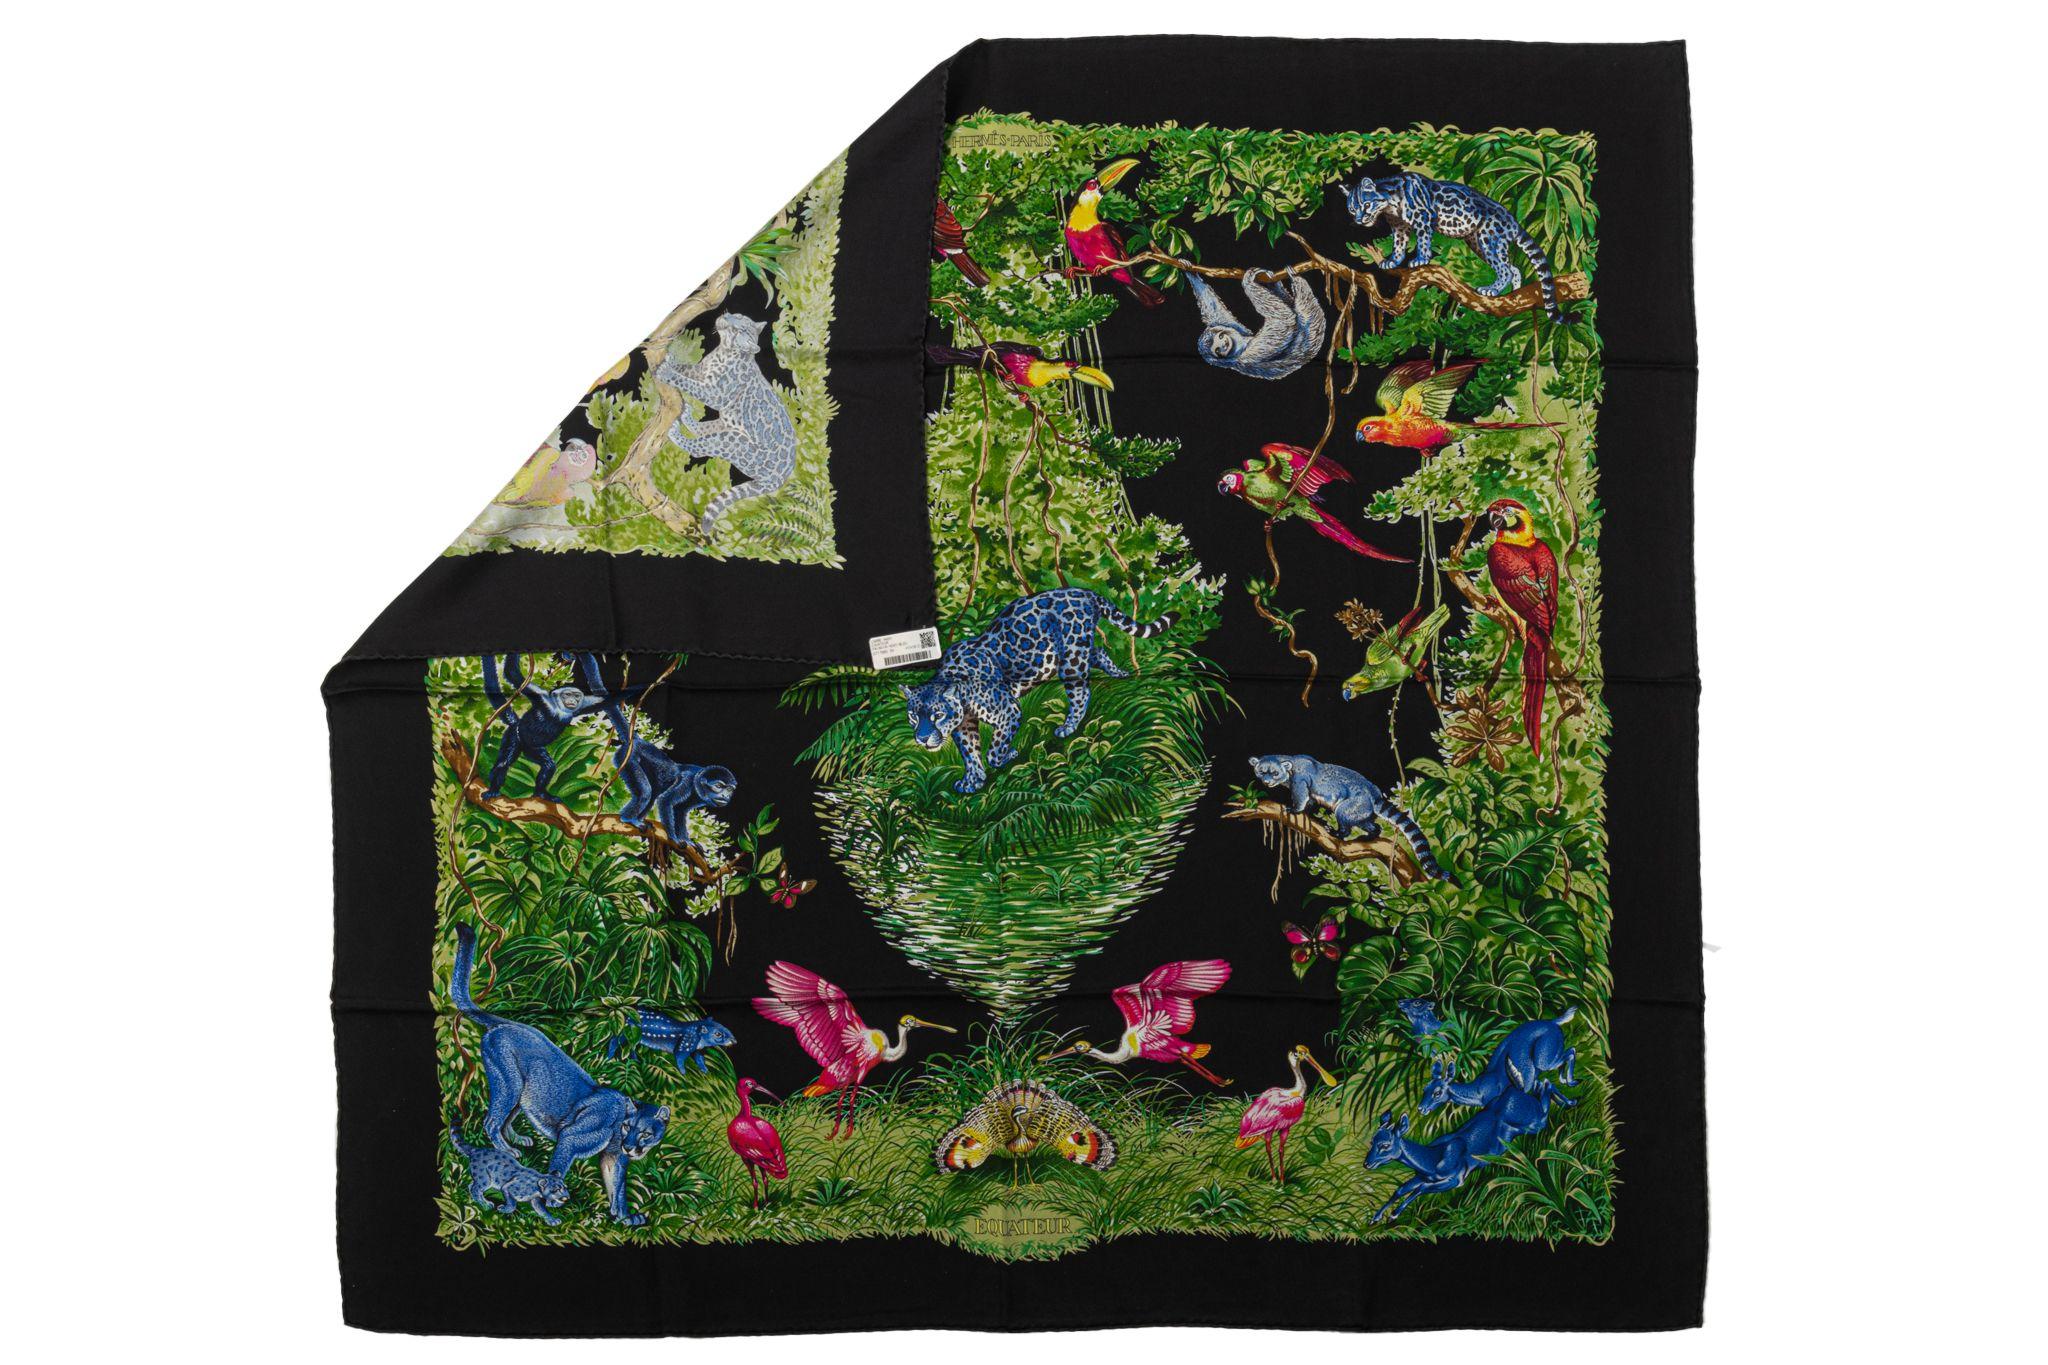 Foulard Hermès Equateur en soie, conçu par Robert Dallet. Couleur noire et verte avec des bords roulés à la main. Soie lavée. État neuf.
